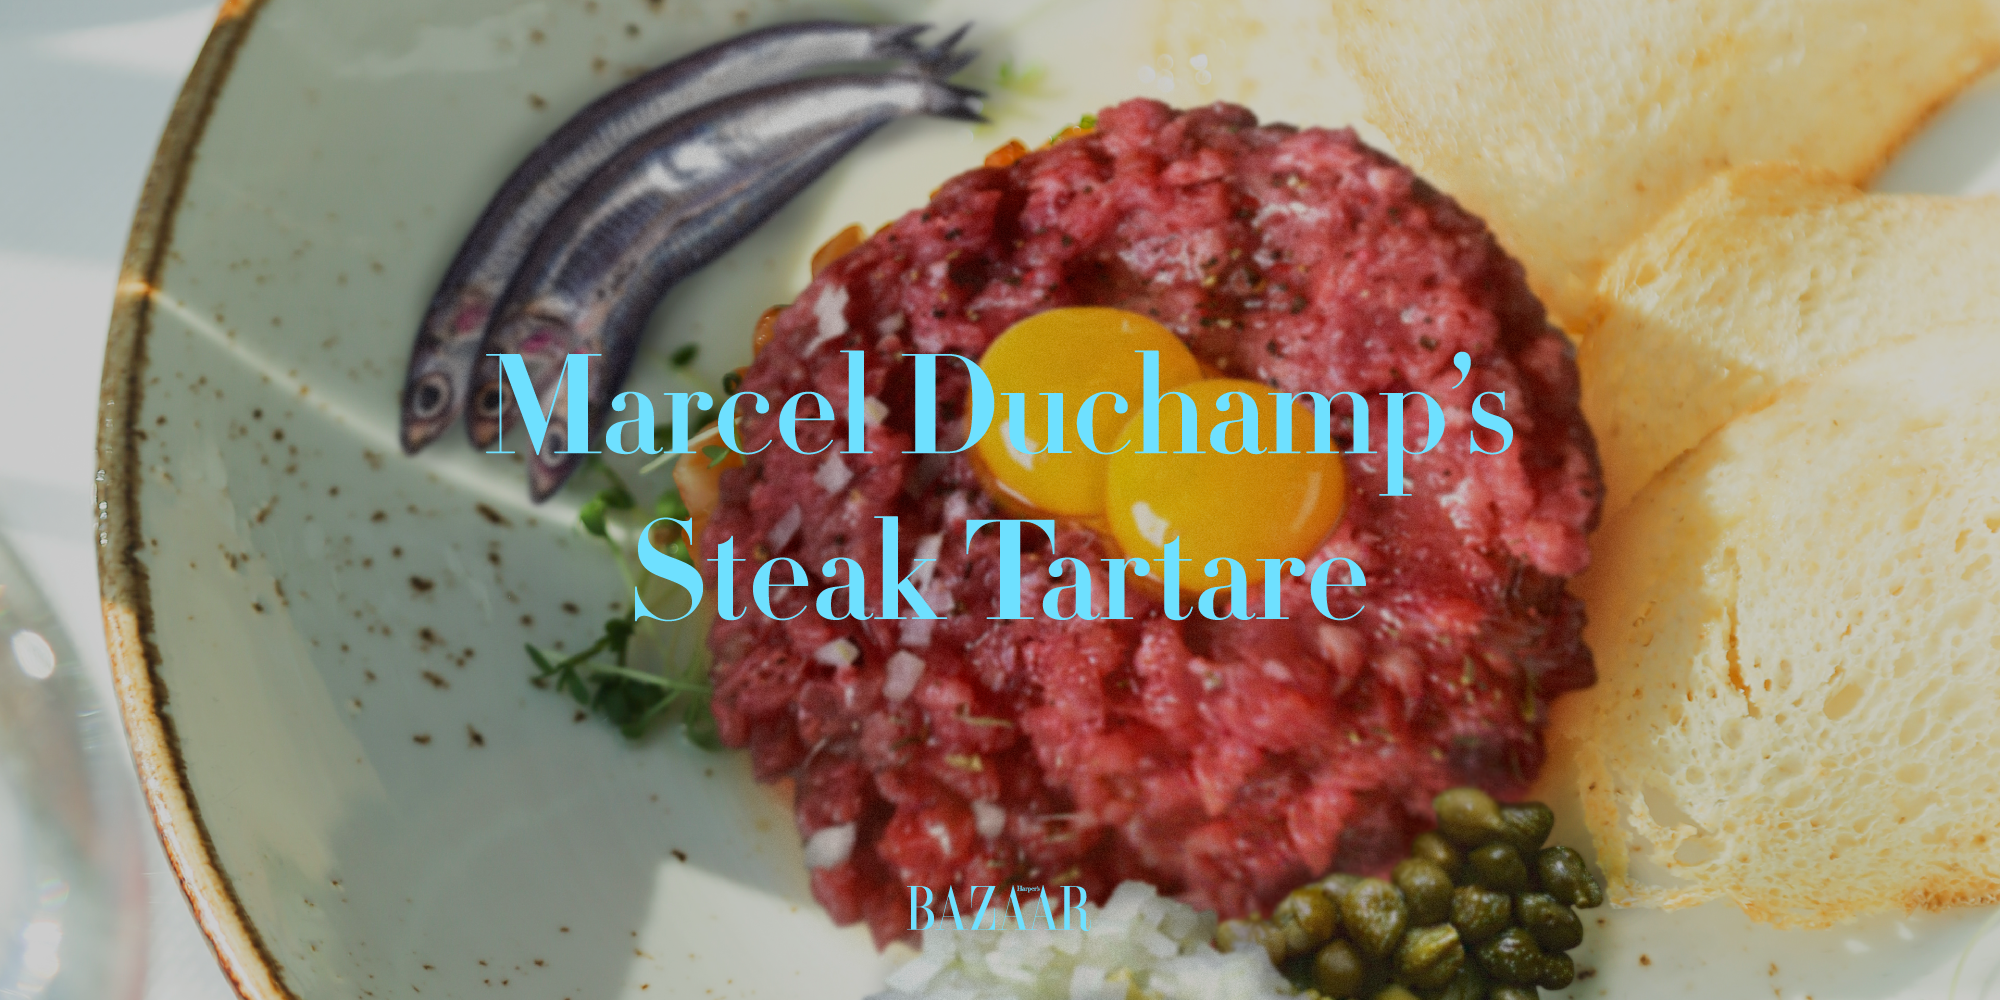 La ricetta della tartare di Marcel Duchamp